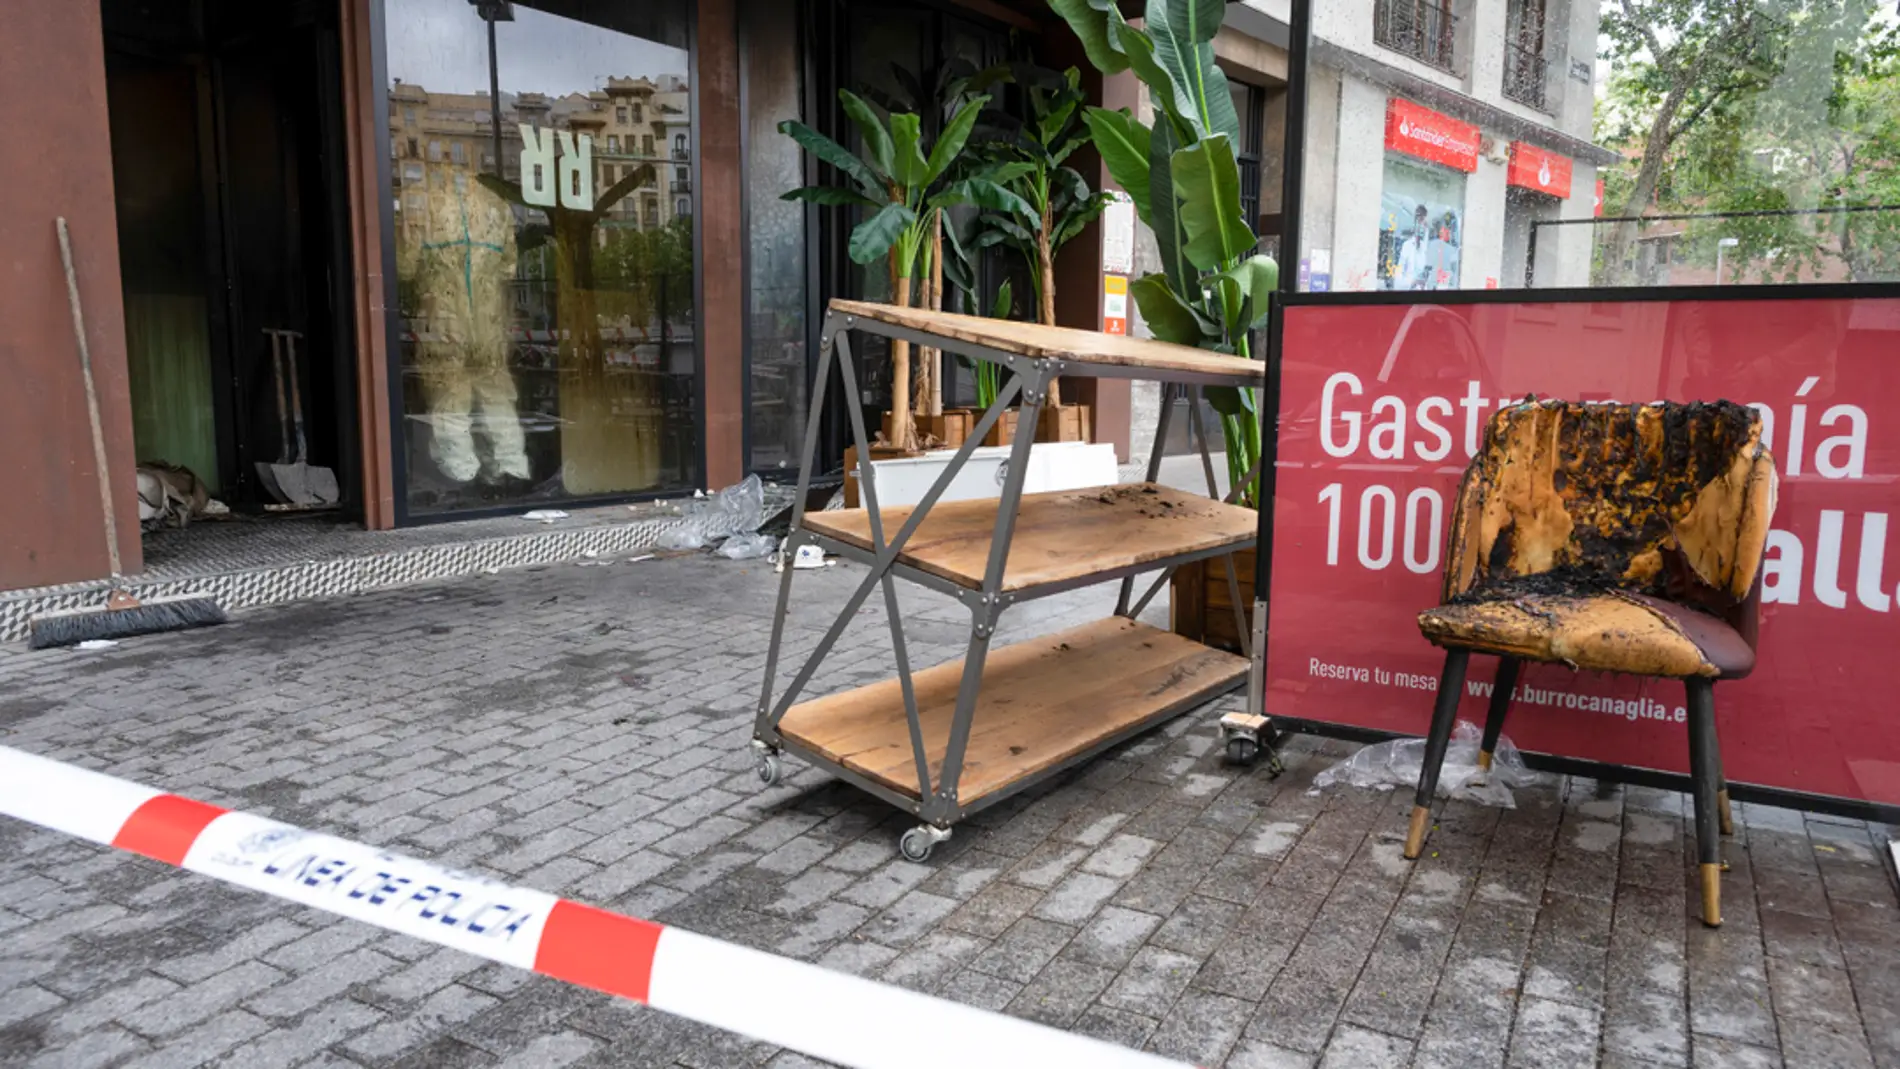 El infierno de los clientes atrapados en el restaurante incendiado: "Los transeúntes intentaron romper el cristal desde la calle para que pudieran escapar"